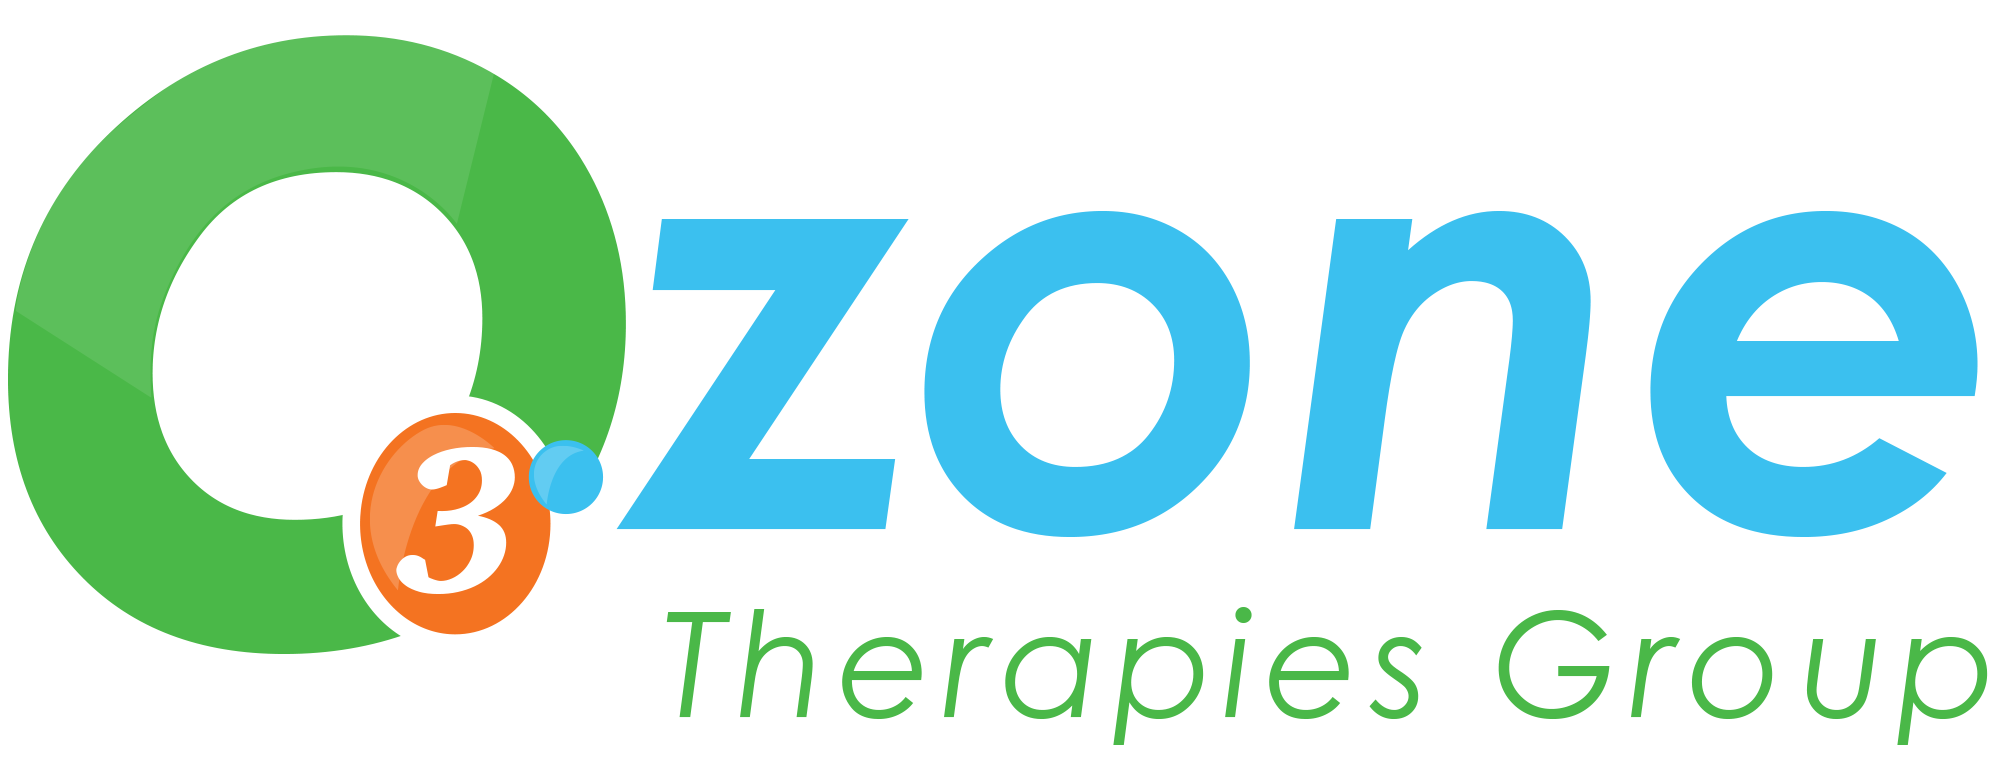 Озон тн. Озон логотип. Озона терапия лого. Озон лого круг. Озон эмблема логотип.